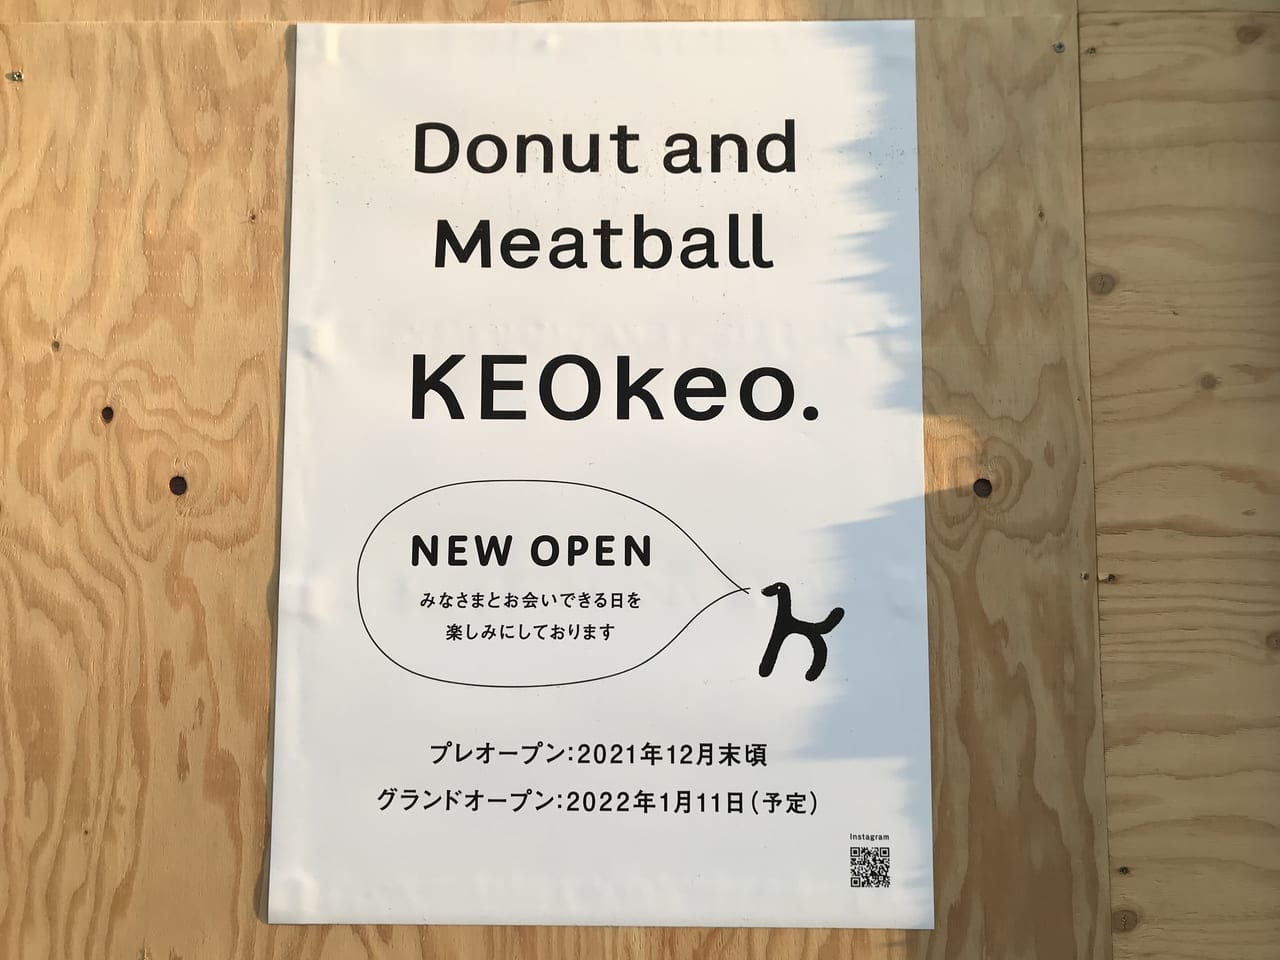 世田谷区上野毛に新しくドーナツアンドミートボール「KEOkeo」がオープンする模様です。